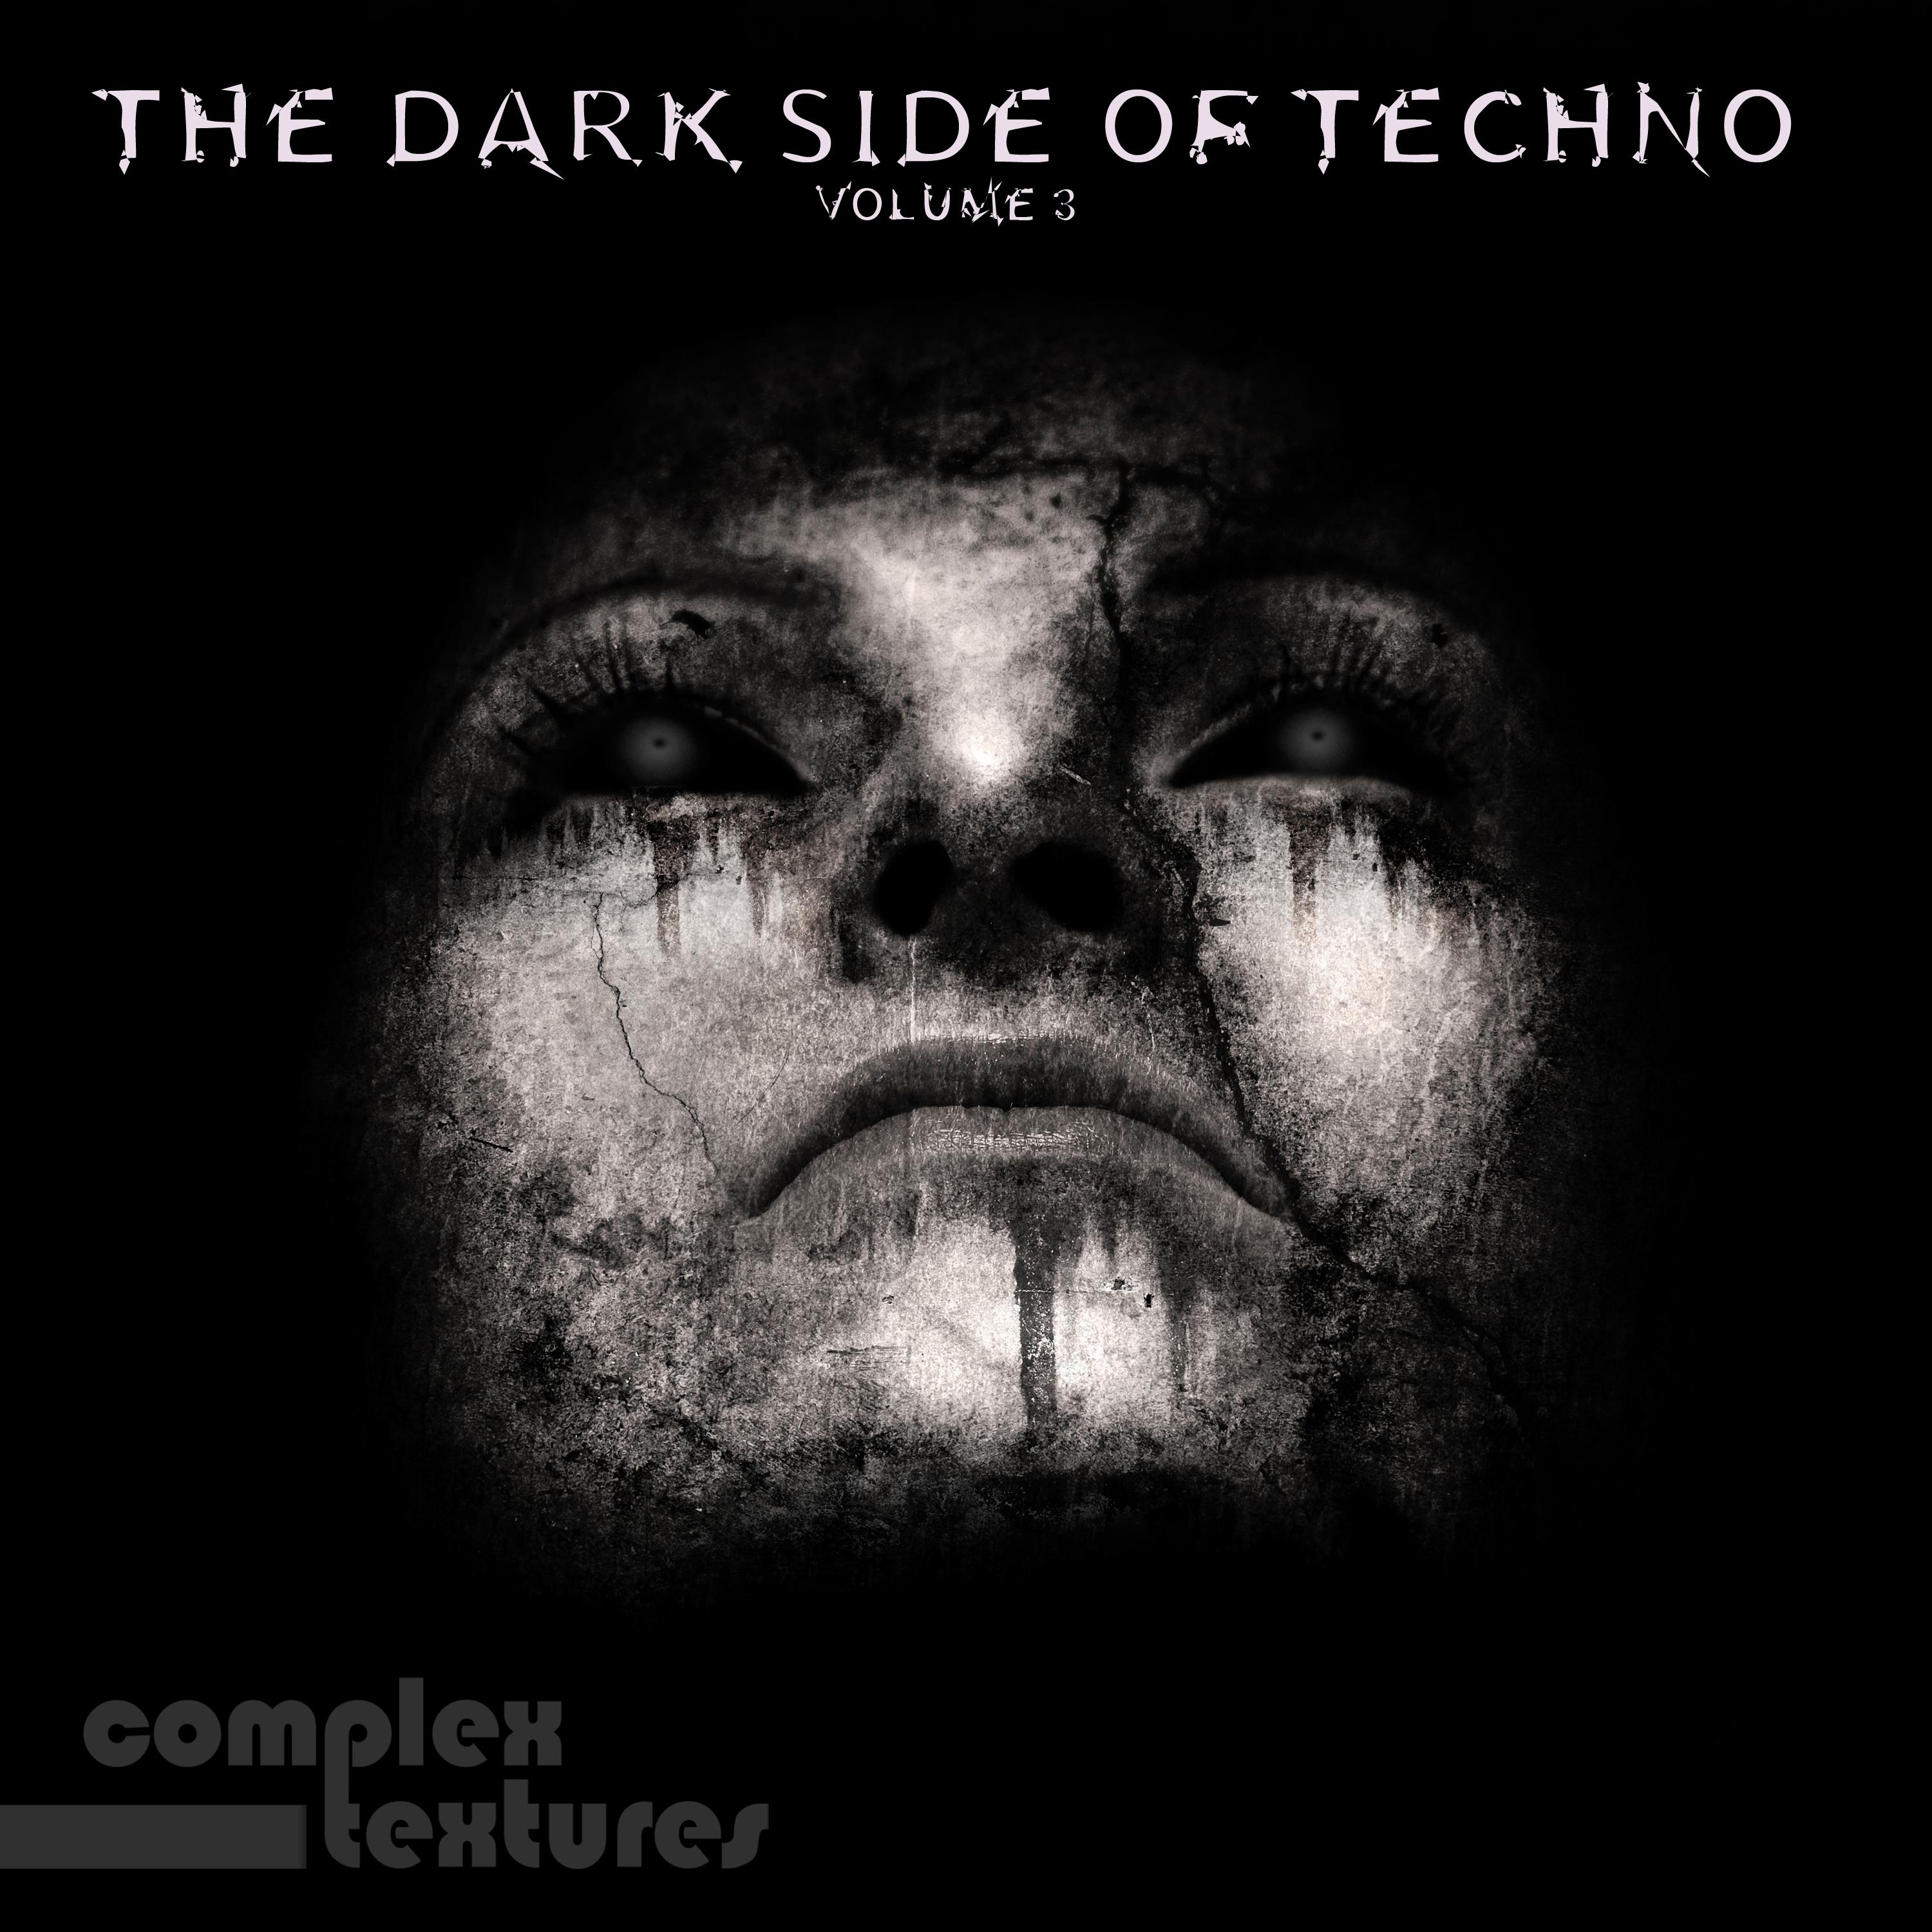 The Dark SIde of Techno, Vol. 3